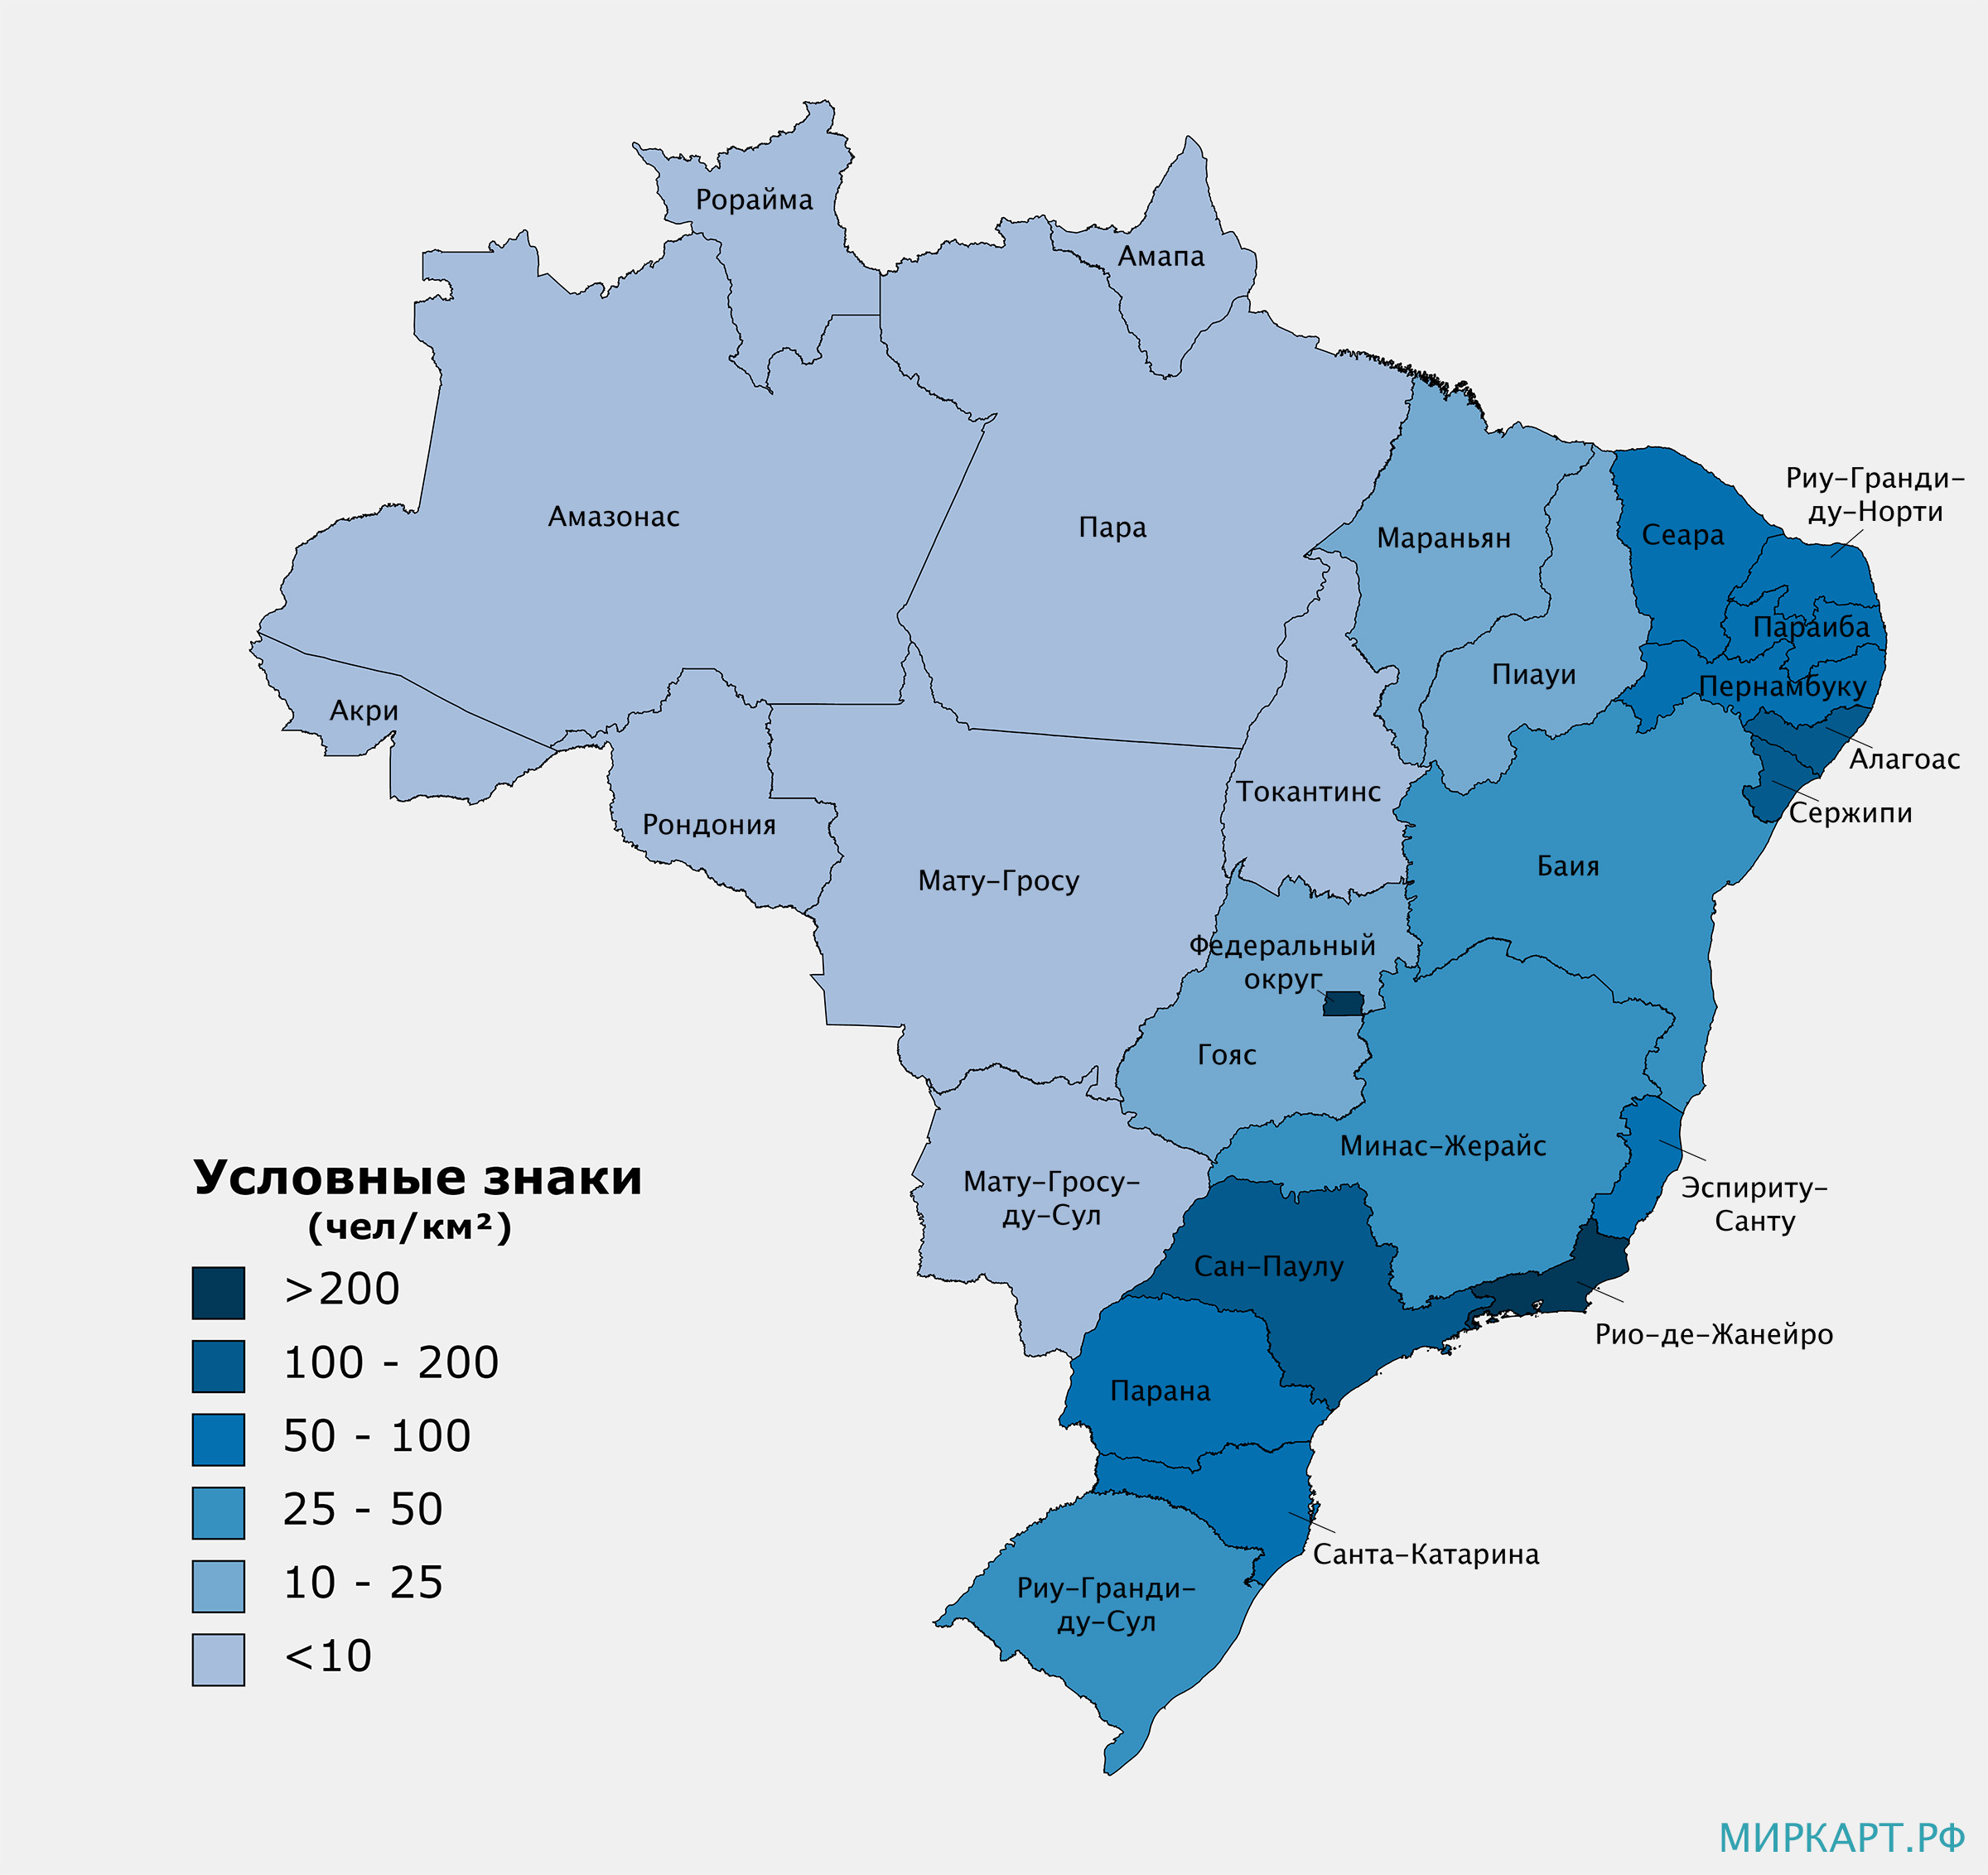 Описание бразилии по картам